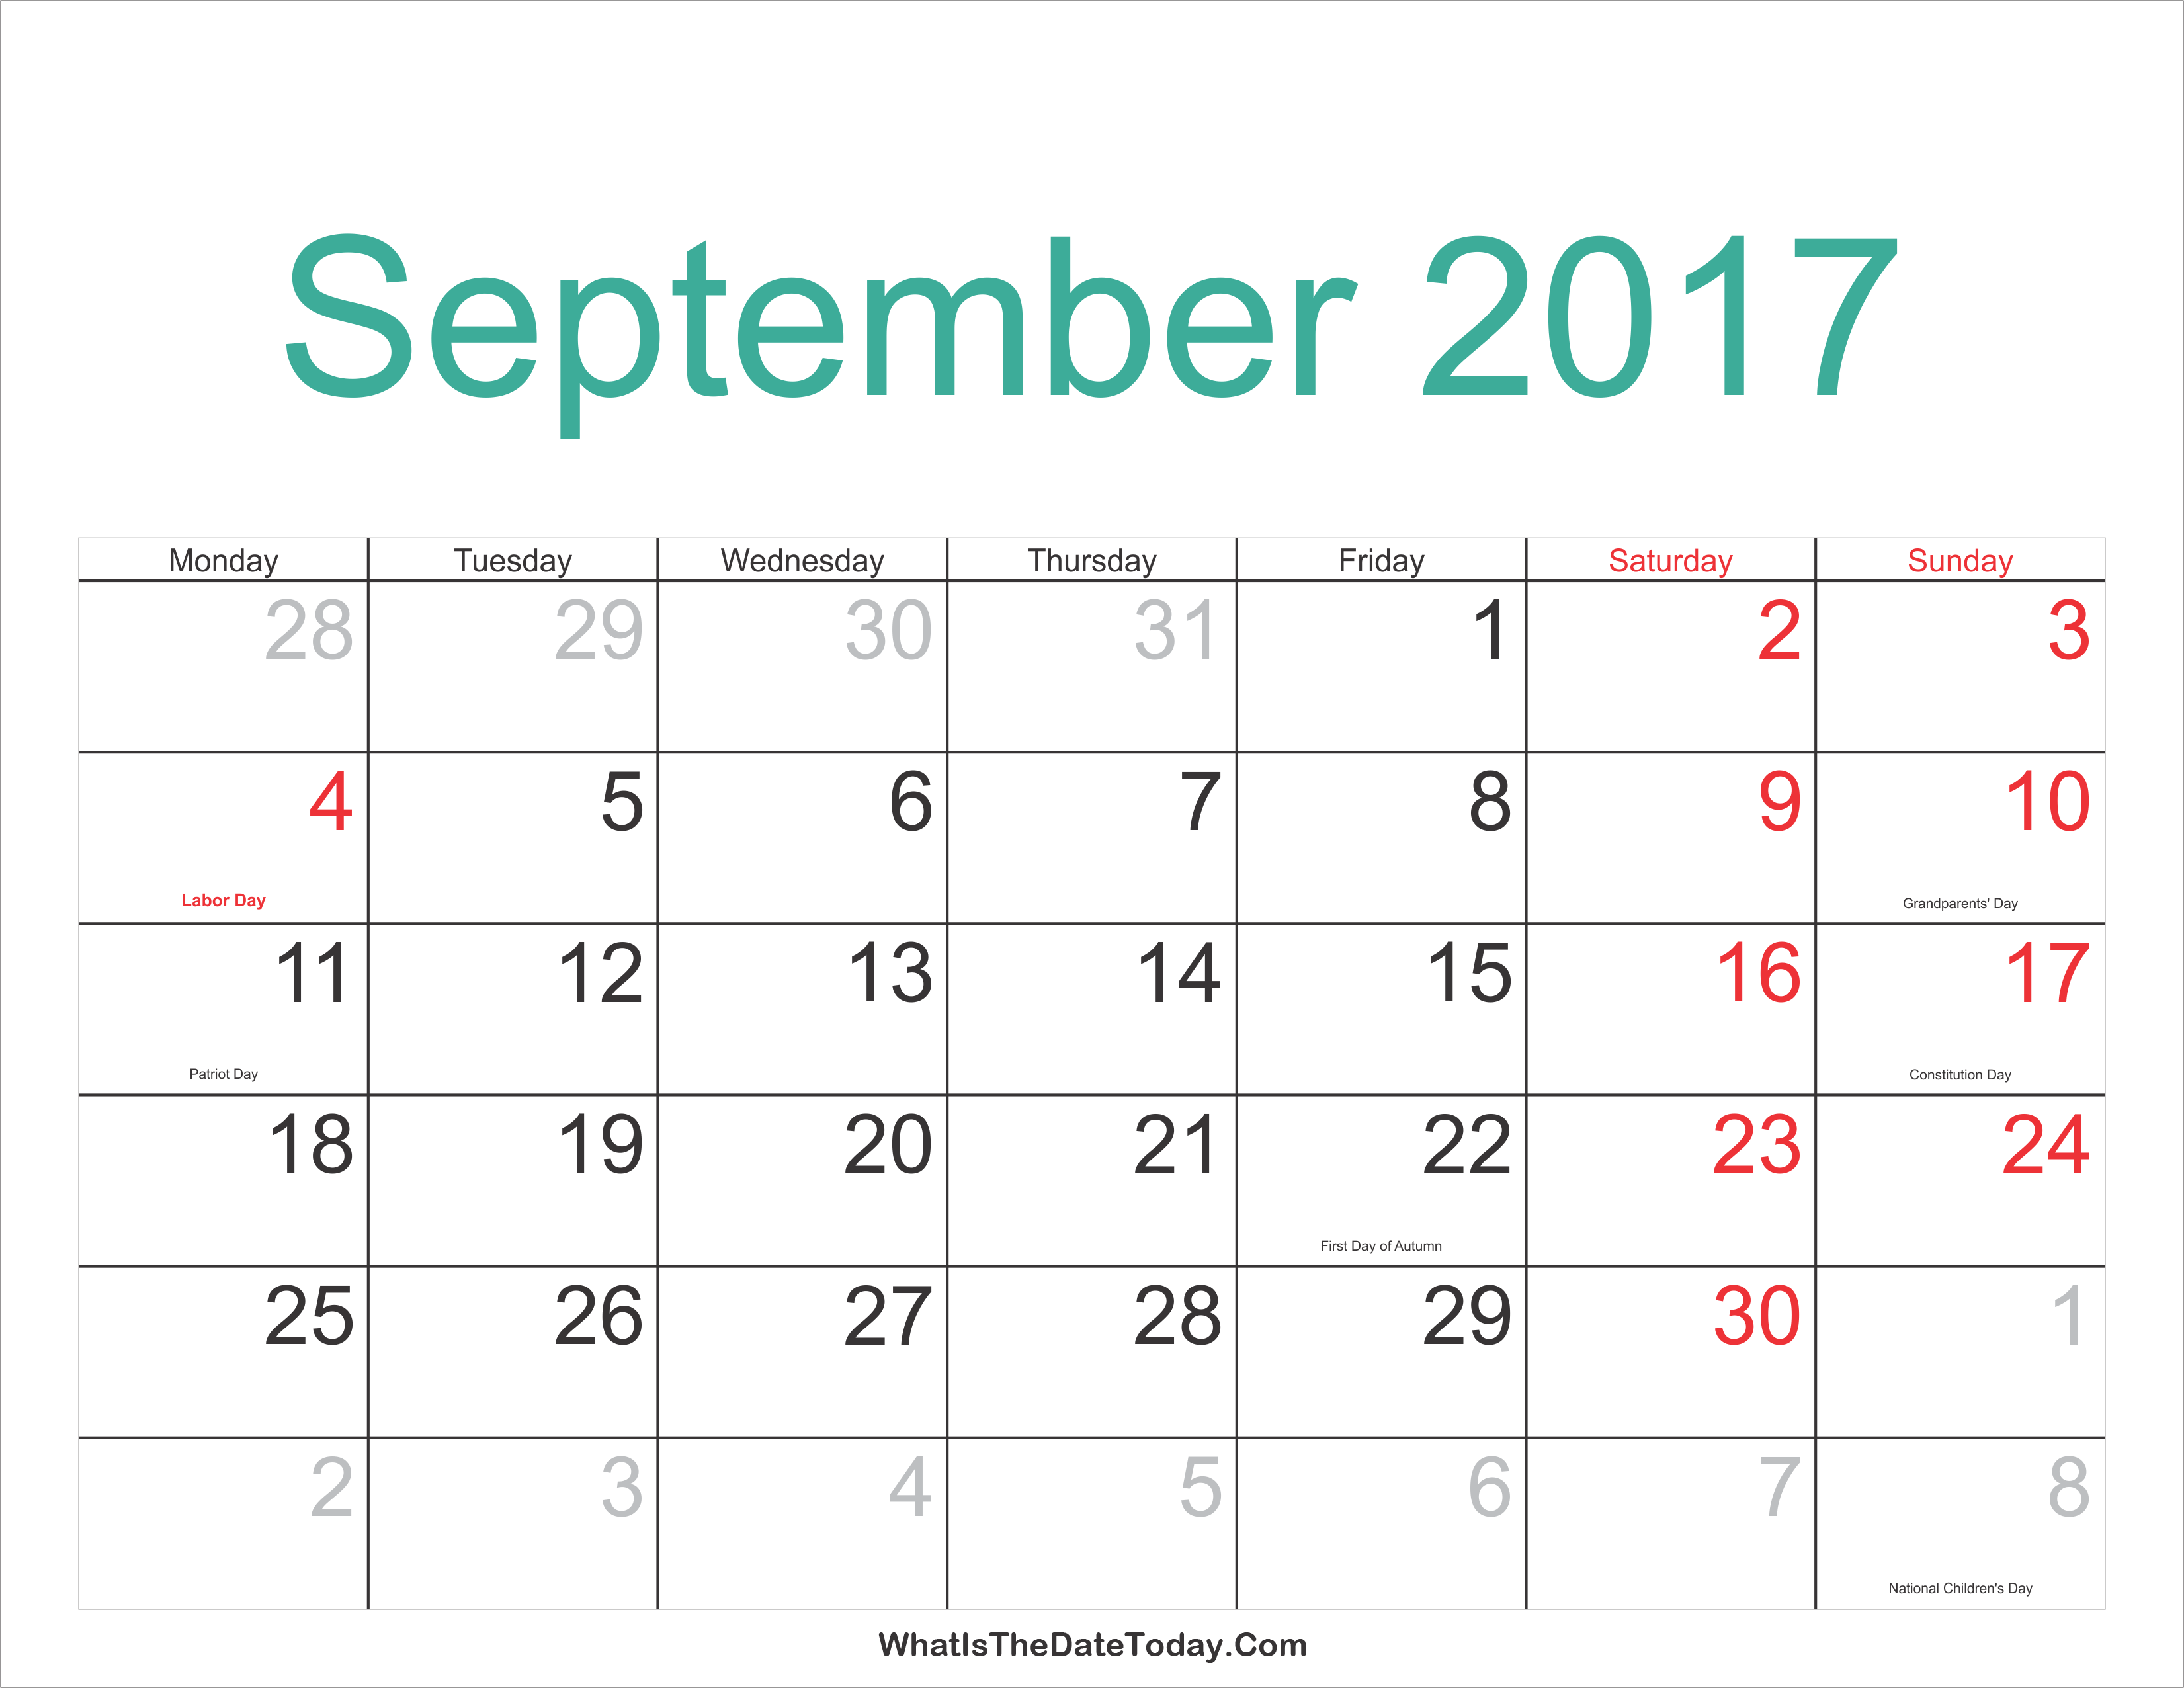 september-2017-calendar-printable-with-holidays-whatisthedatetoday-com